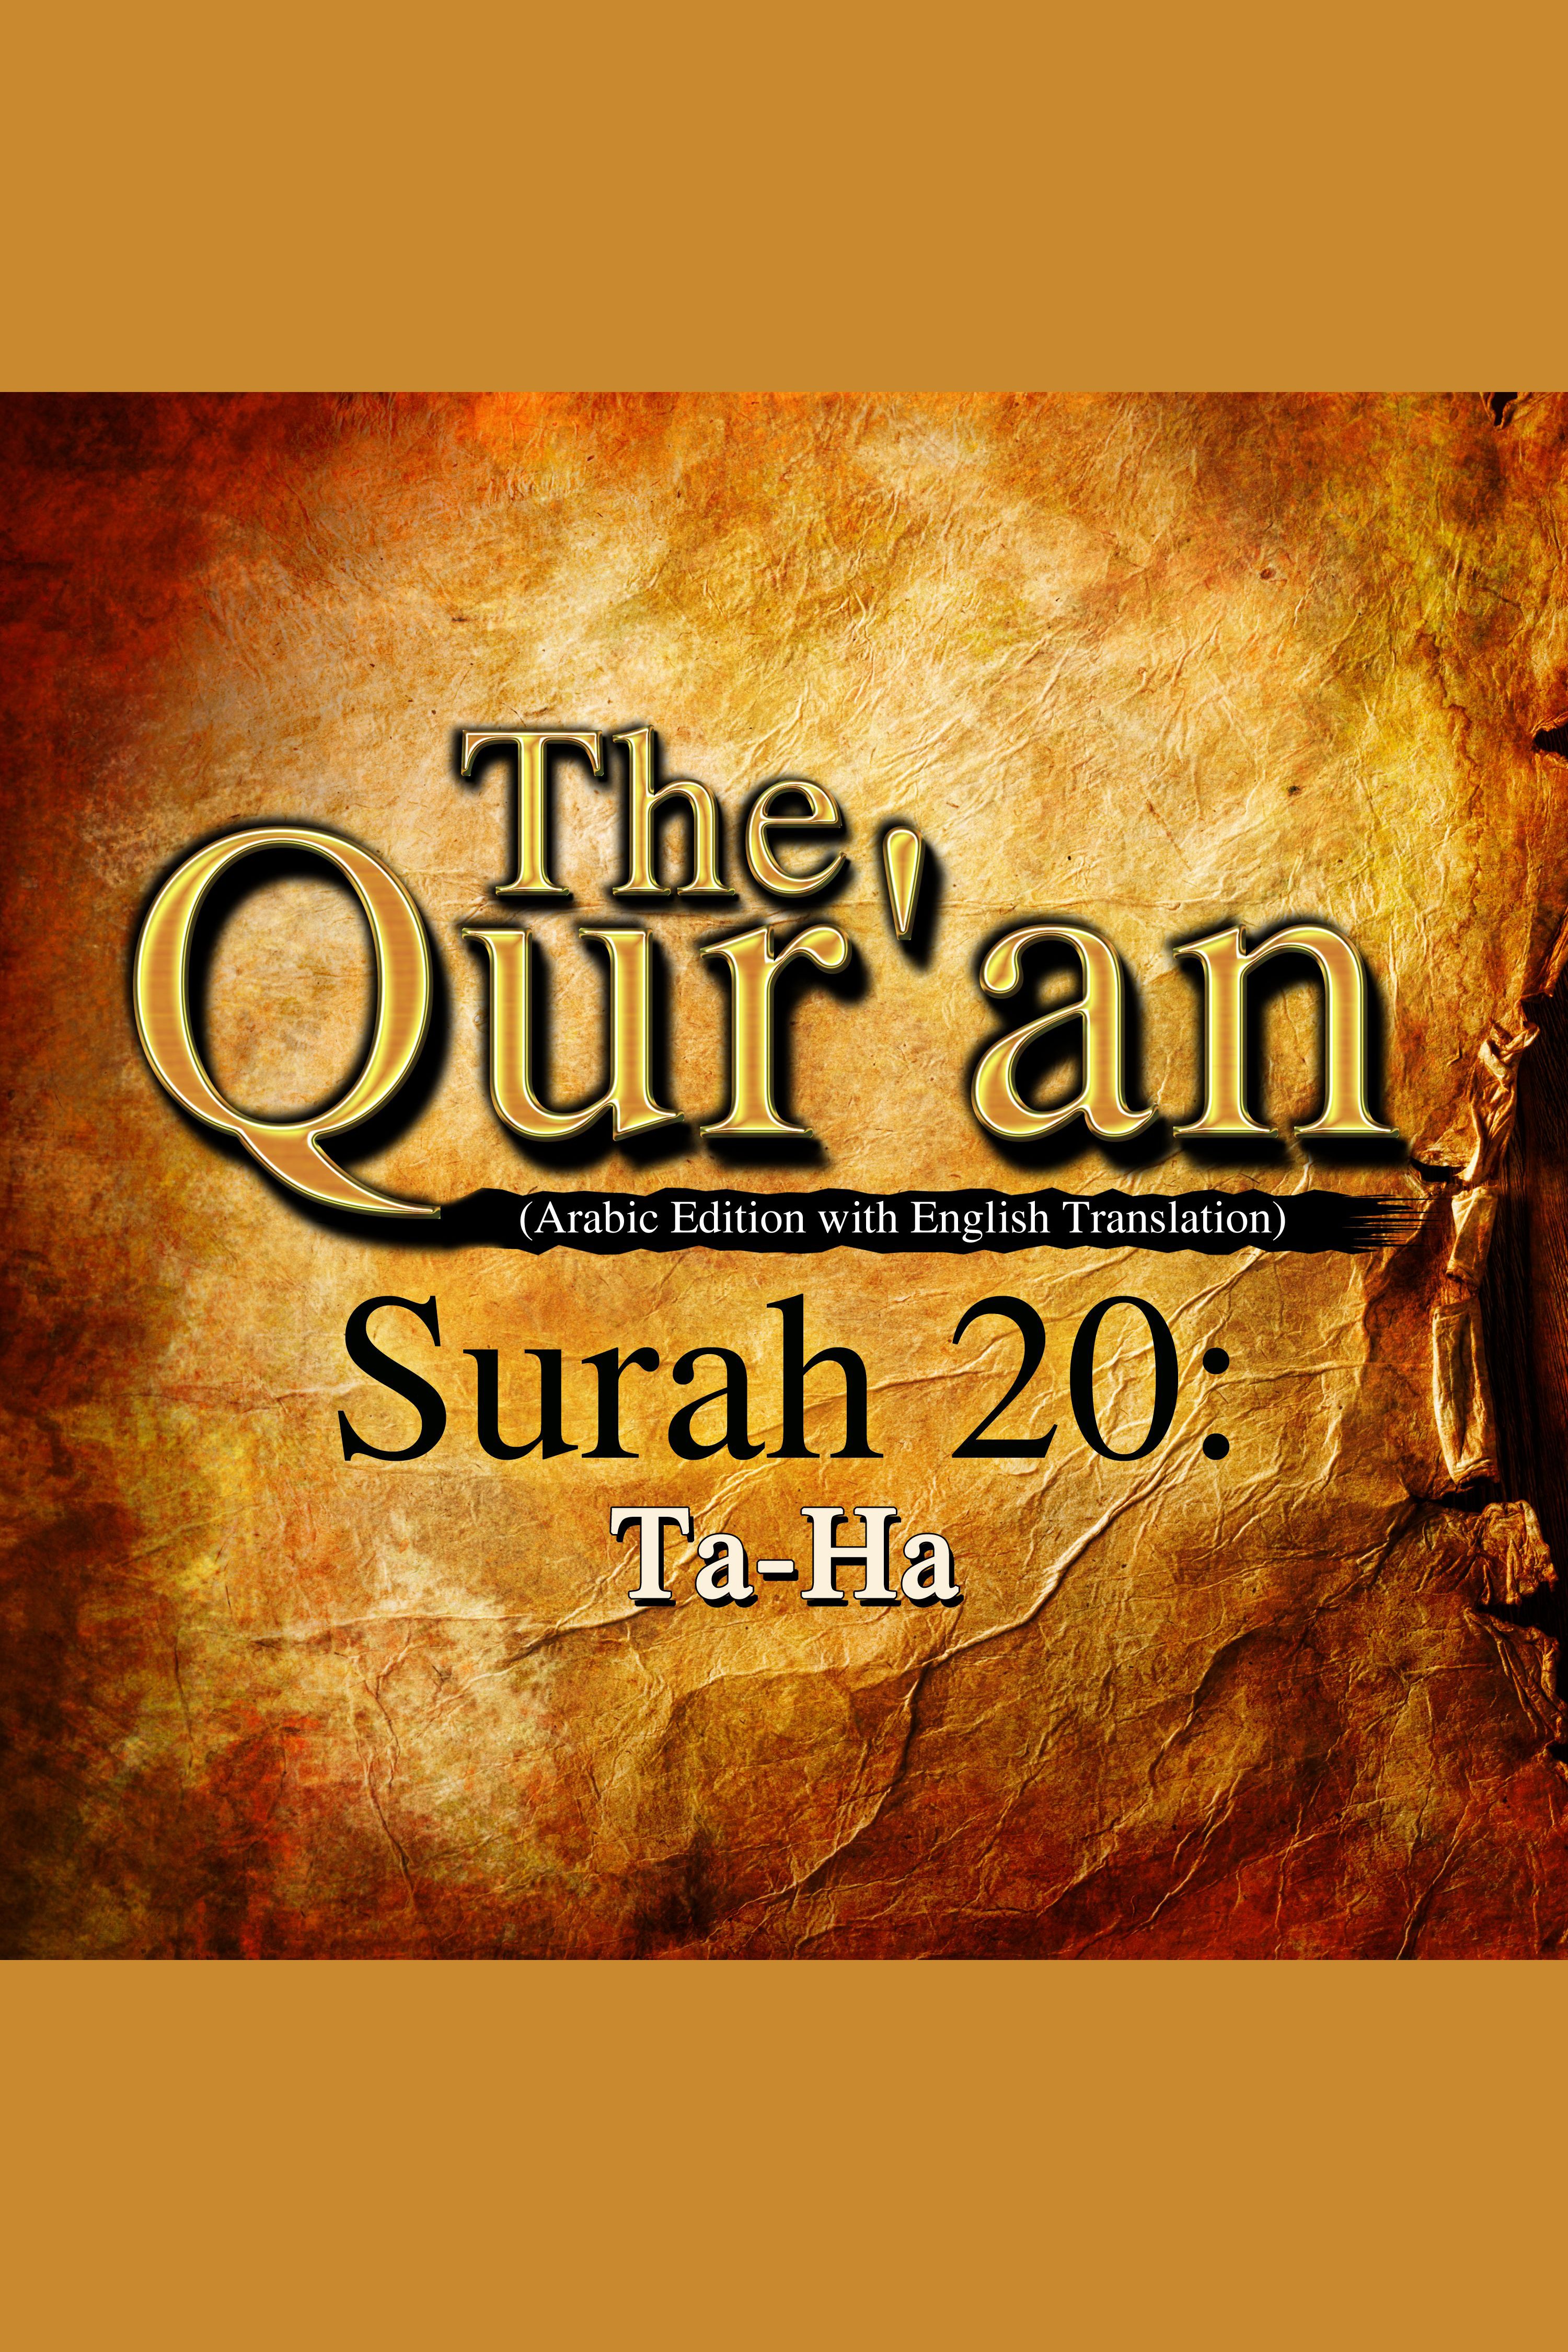 The Qur'an - Surah 20 - Ta-Ha cover image